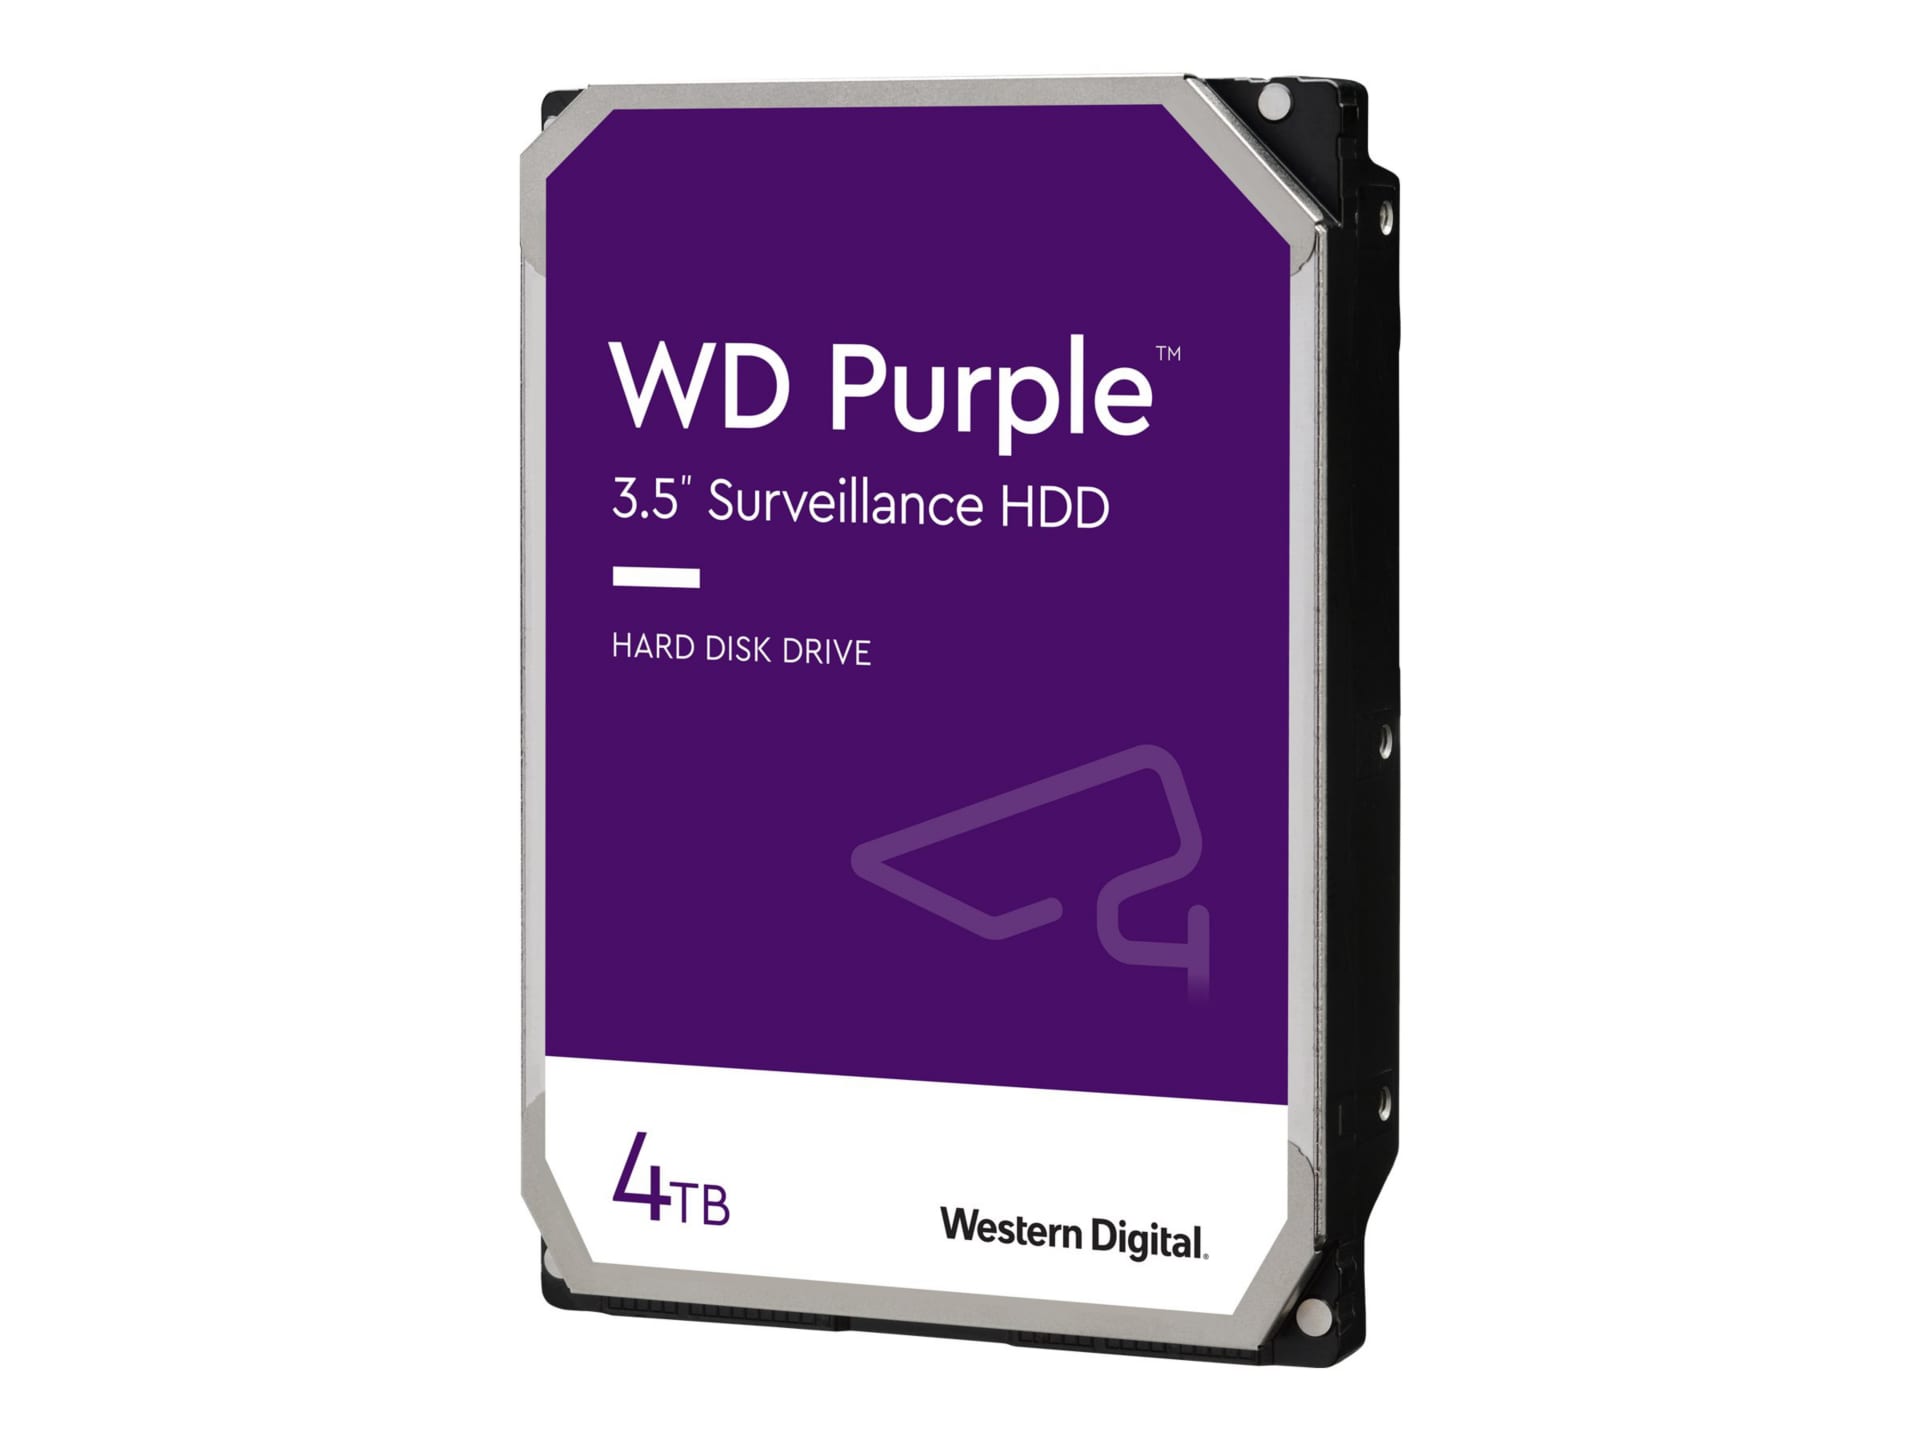 WD Purple WD43PURZ - hard drive - 4 TB - surveillance - SATA 6Gb/s